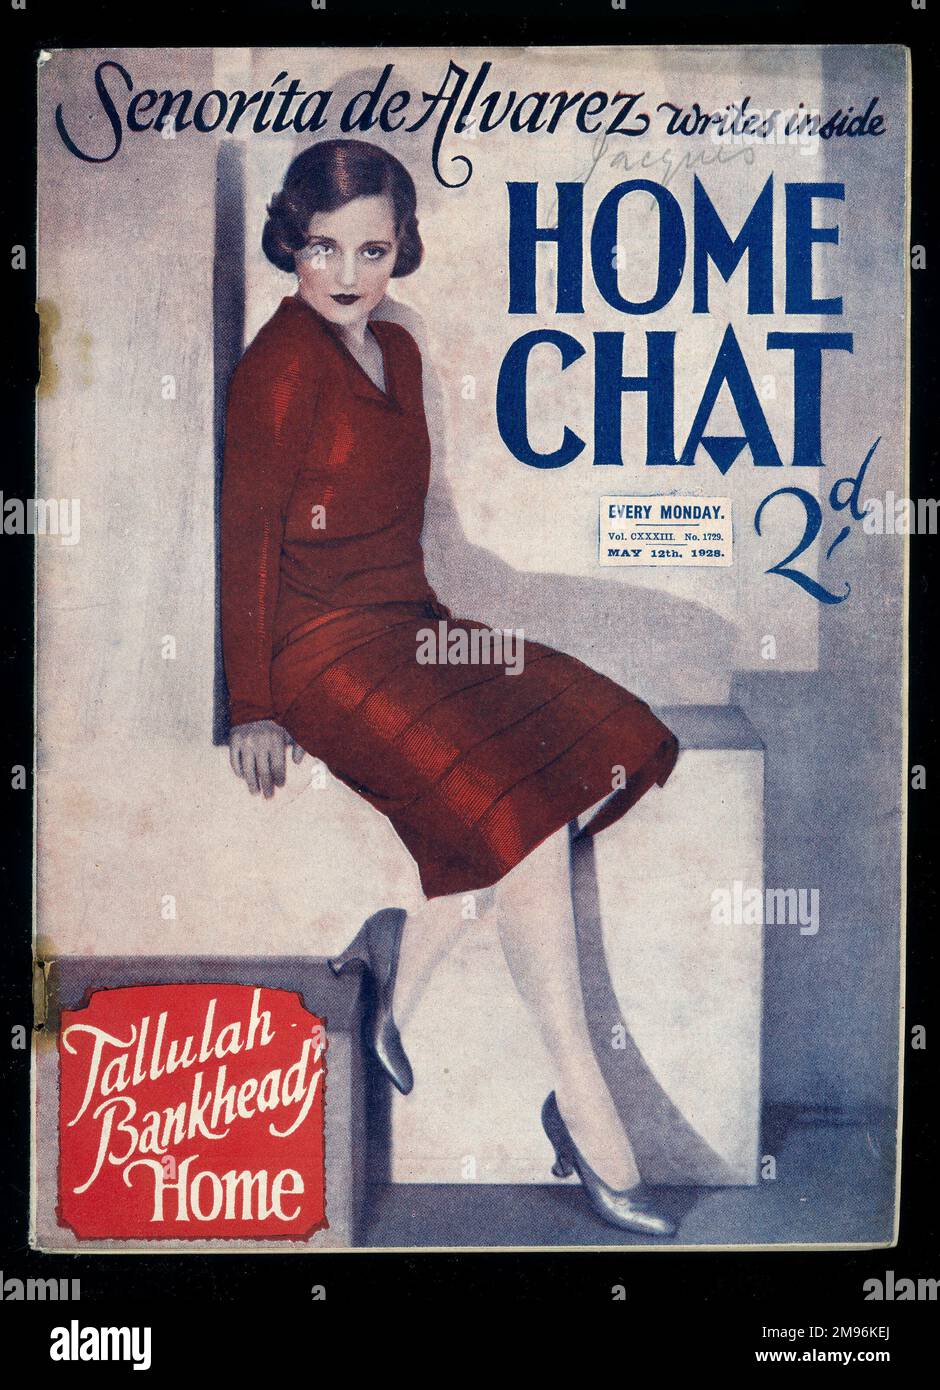 Titelseite des Magazins „Home Chat“ mit einem Artikel von Senorita de Alvarez und einem Artikel auf Tallulah Bankhead's Home, mit einem Porträt der Schauspielerin auf dem Cover, in einem dunkelroten Kleid. Stockfoto